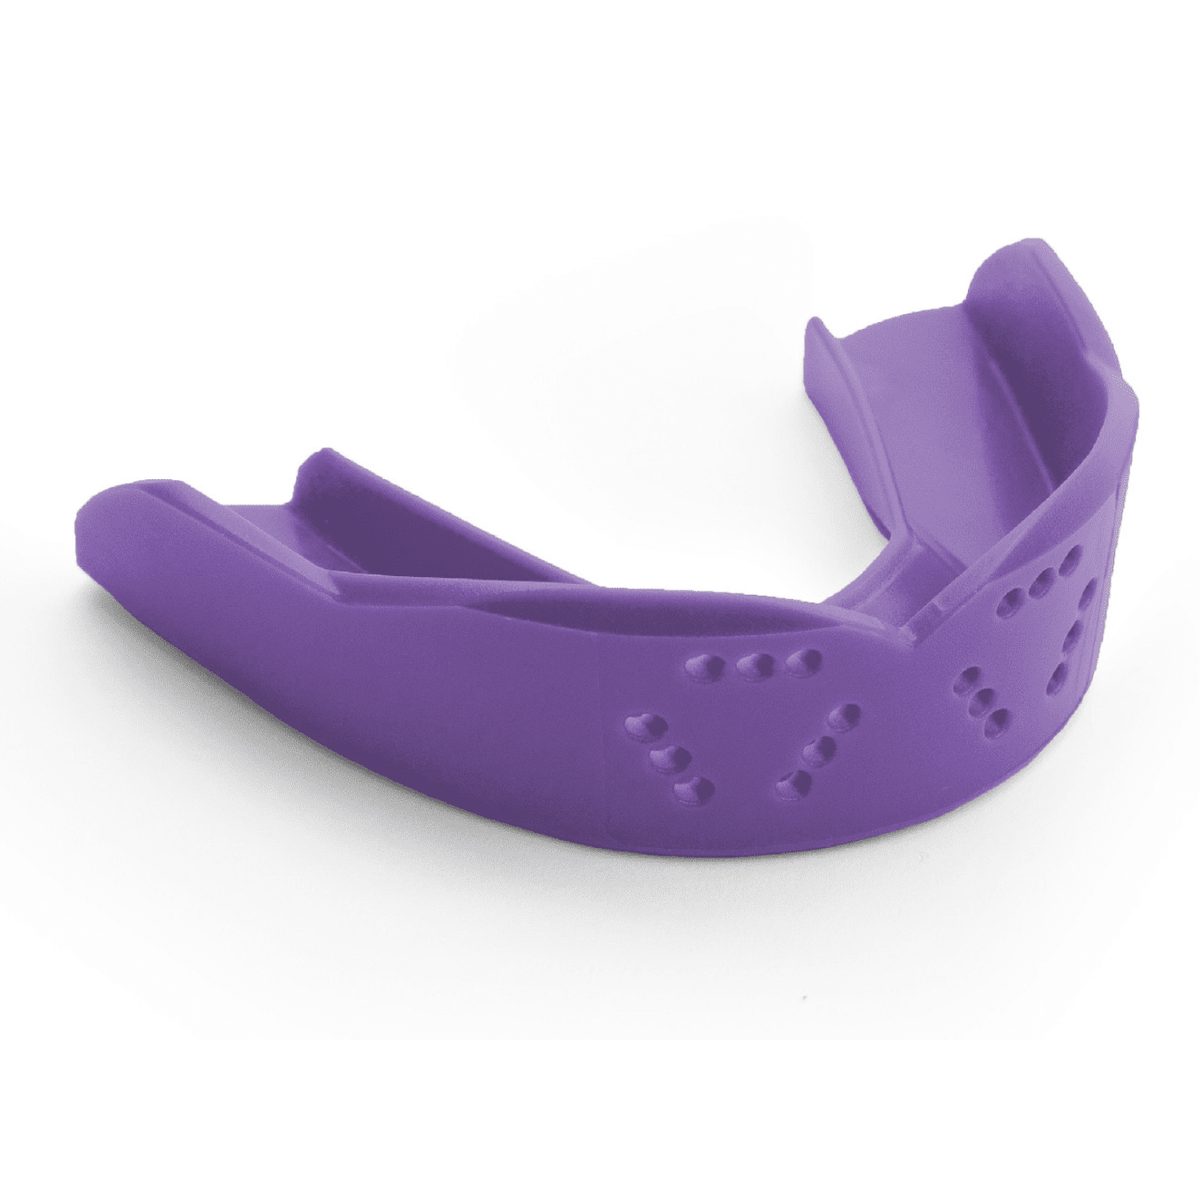 SISU 3D Mouth Guard Purple Punch